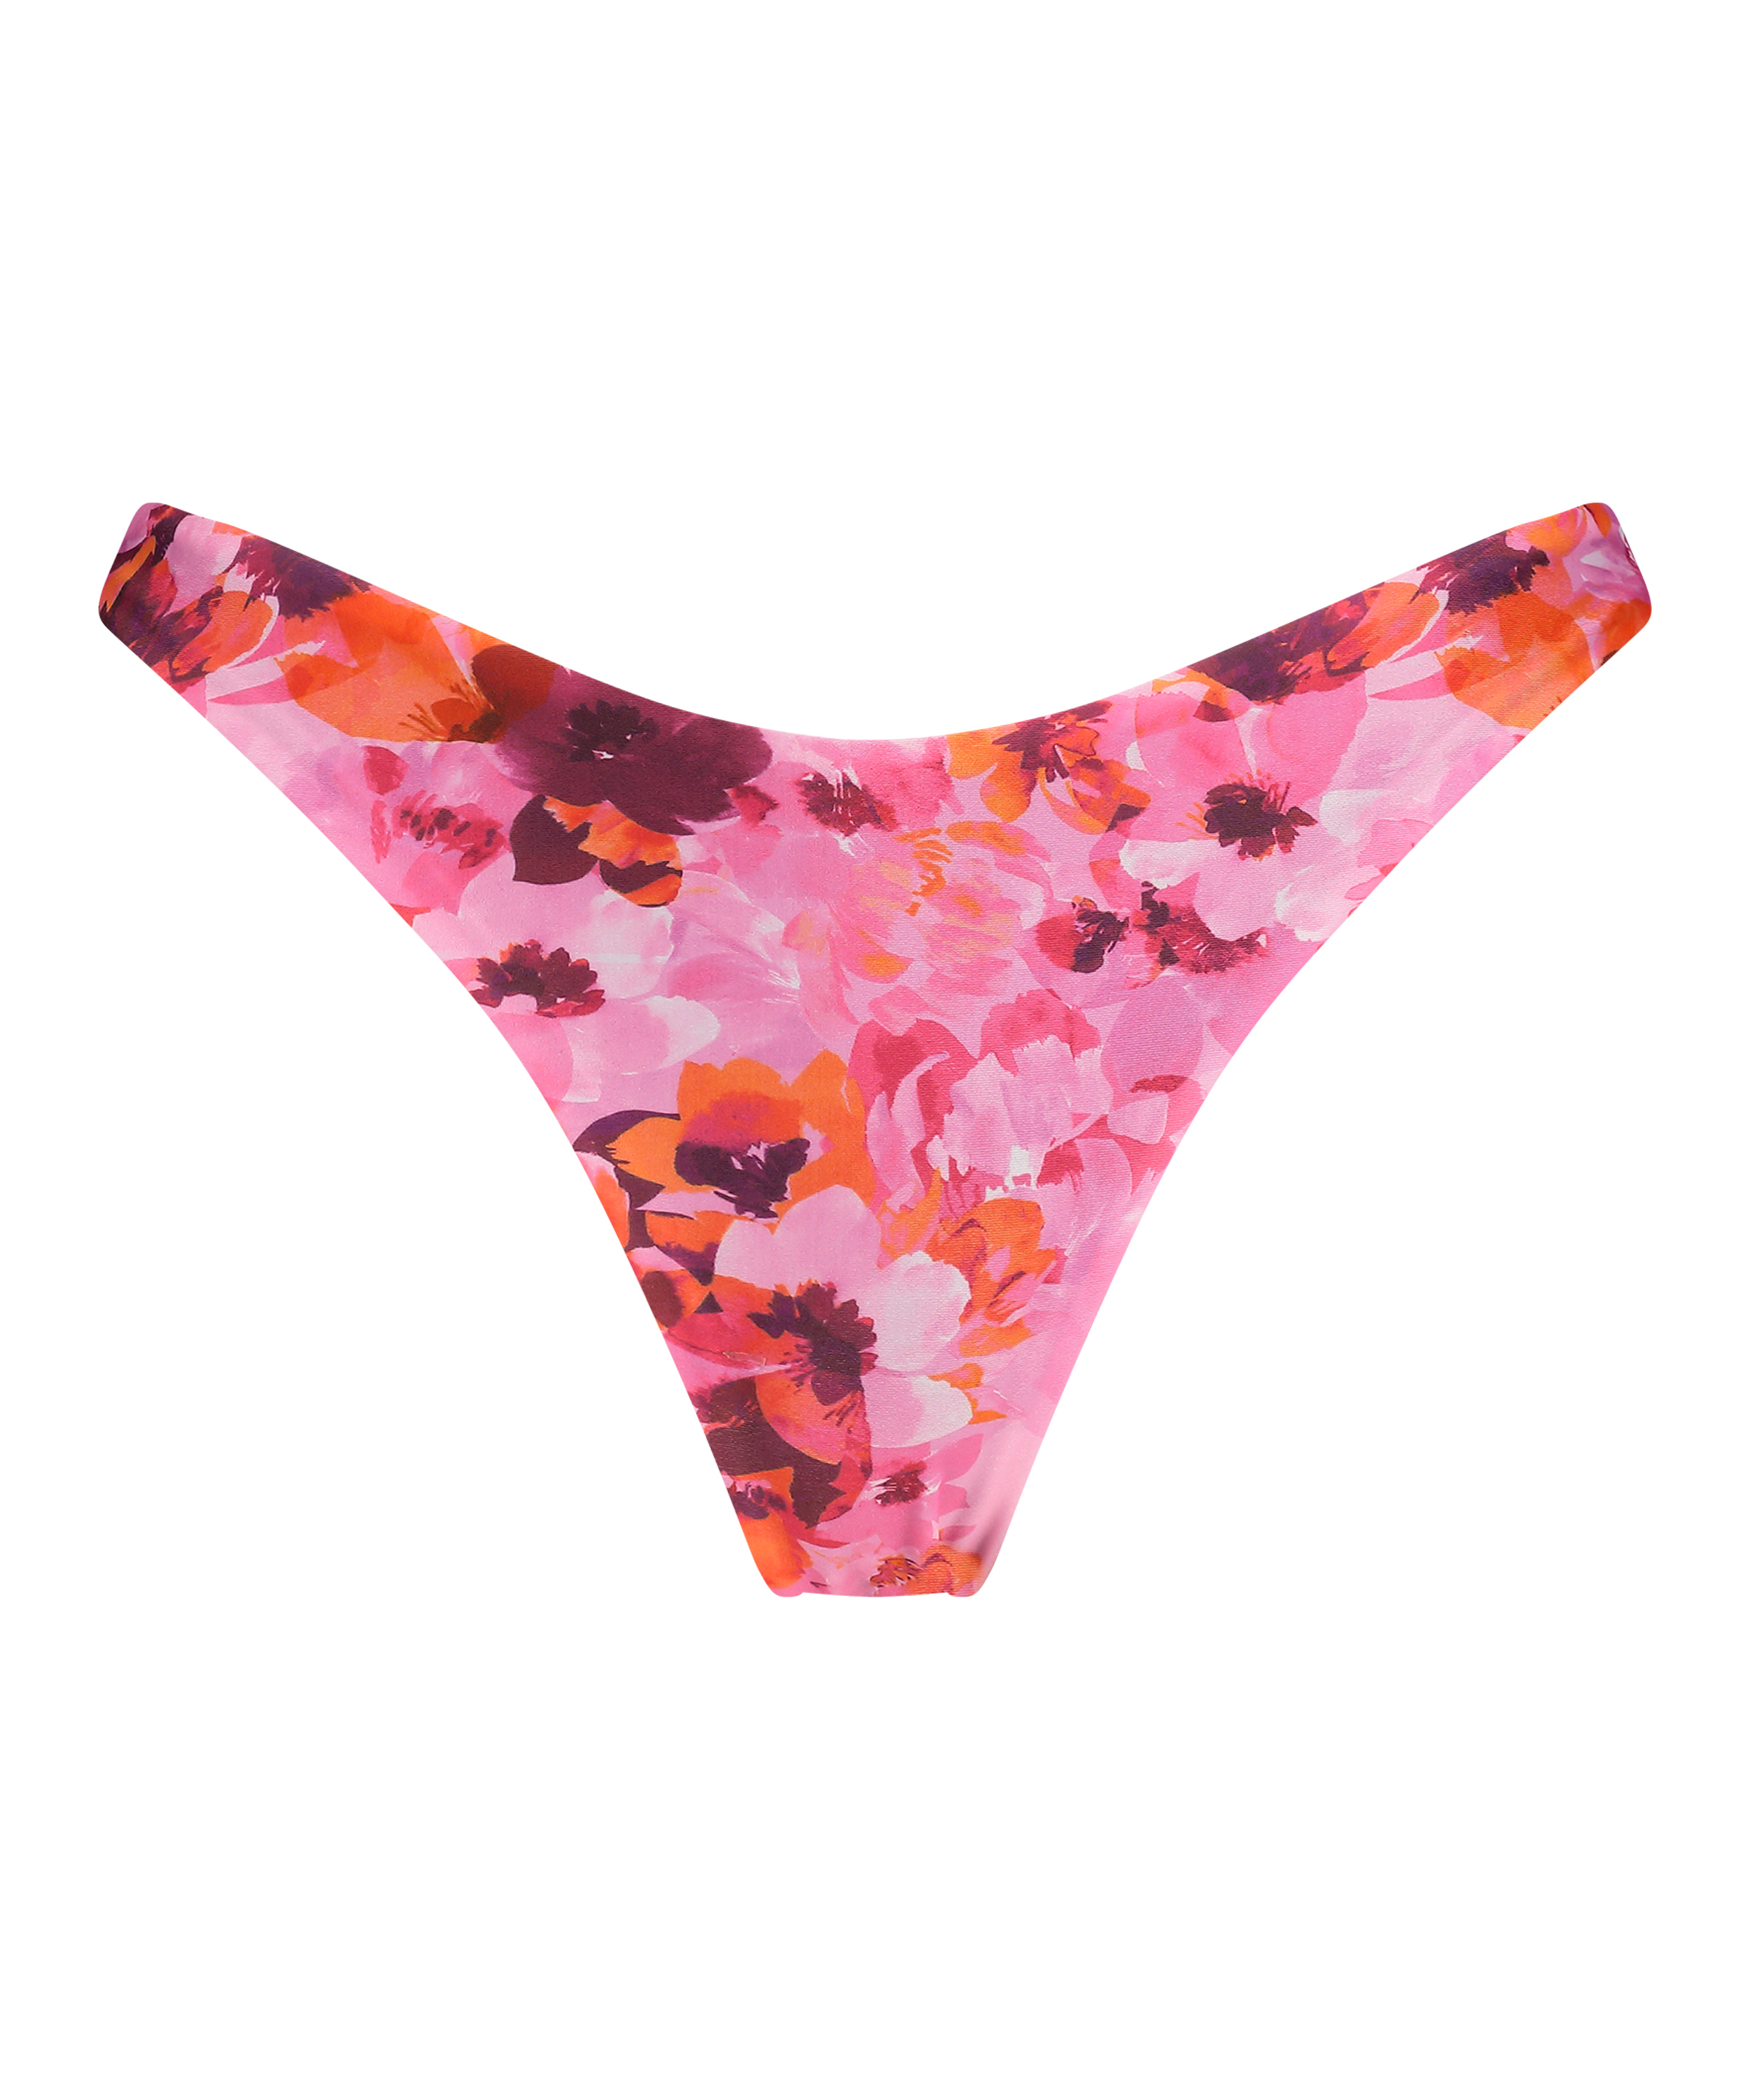 Højskåret Bikinitrusse Floral, pink, main